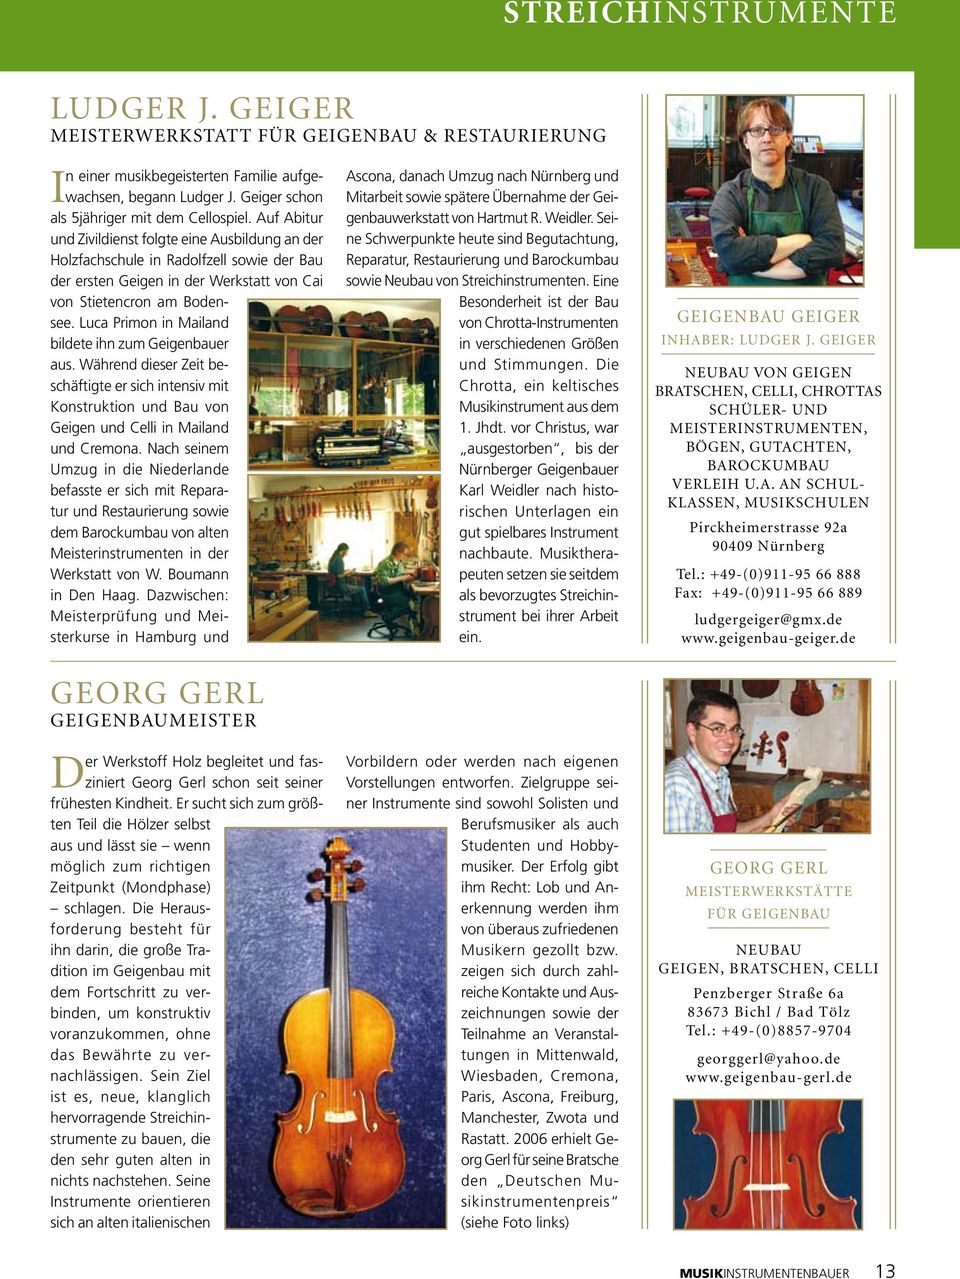 Luca Primon in Mailand bildete ihn zum Geigenbauer aus. Während dieser Zeit beschäftigte er sich intensiv mit Konstruktion und Bau von Geigen und Celli in Mailand und Cremona.